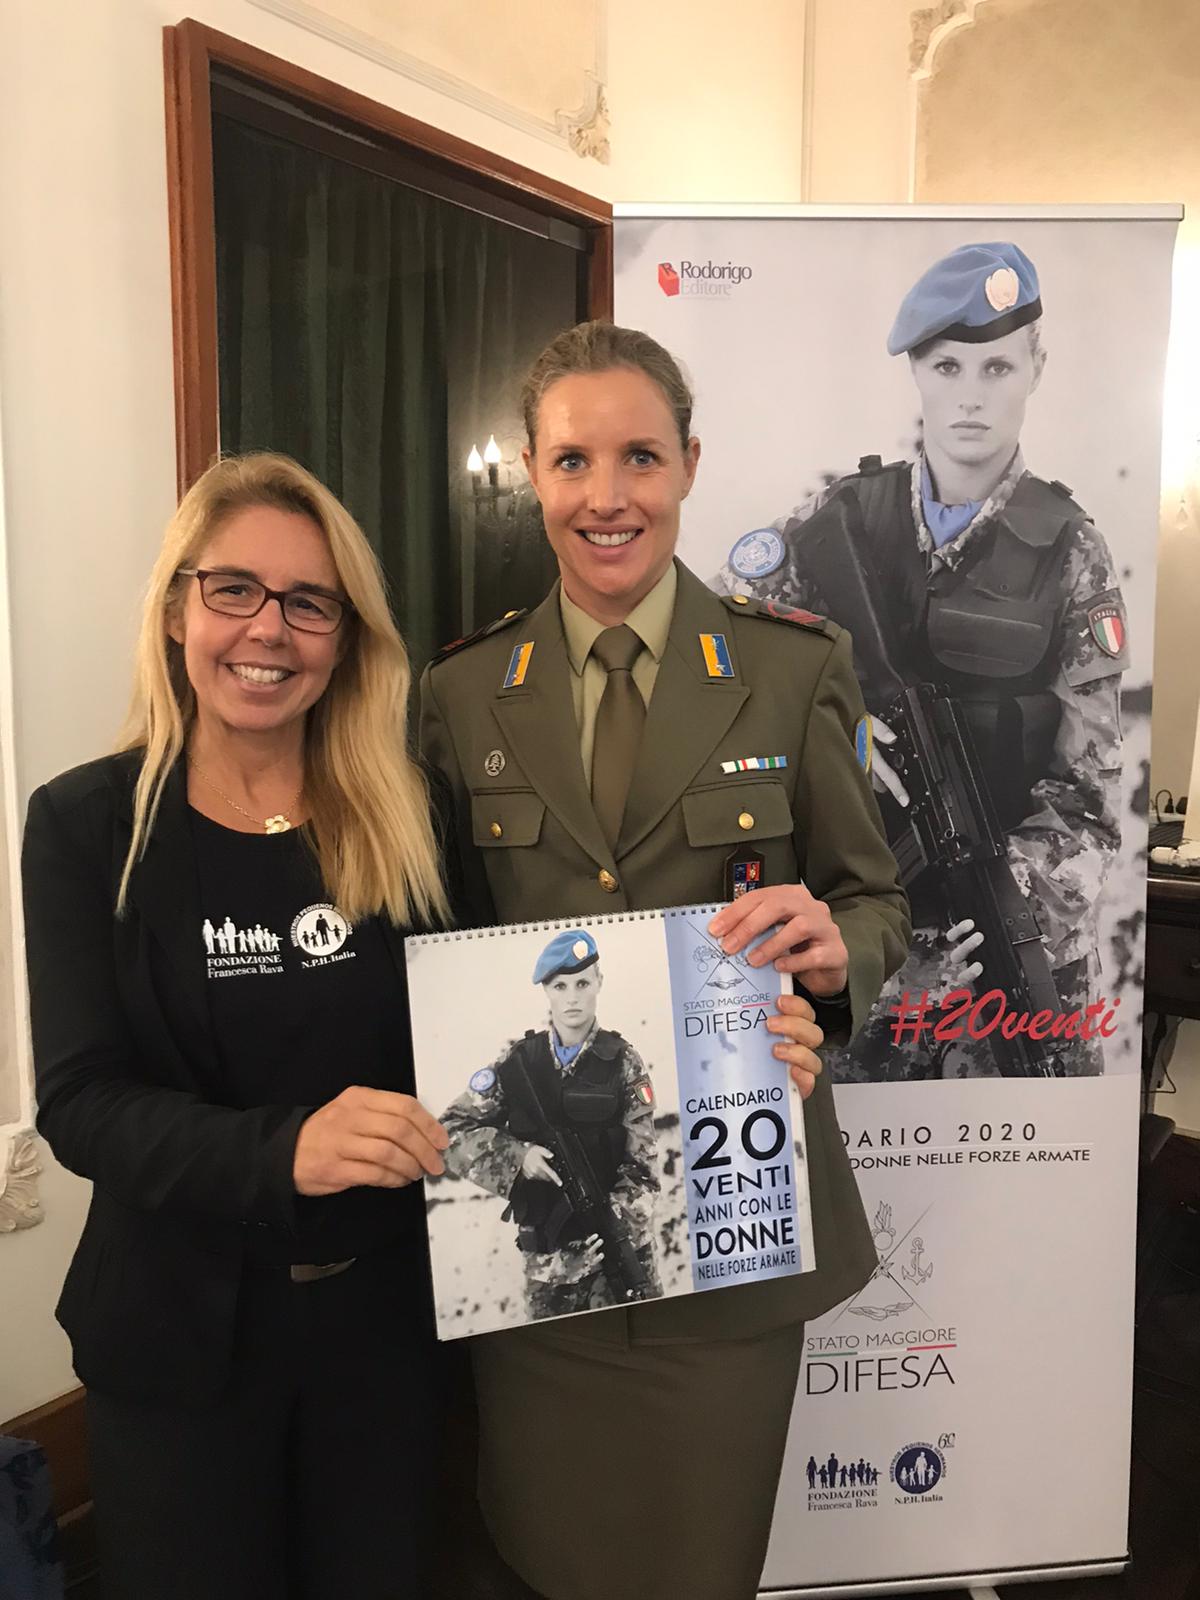 Presentato a Napoli il calendario 2020 delle Forze Armate dedicato alla Fondazione Francesca Rava